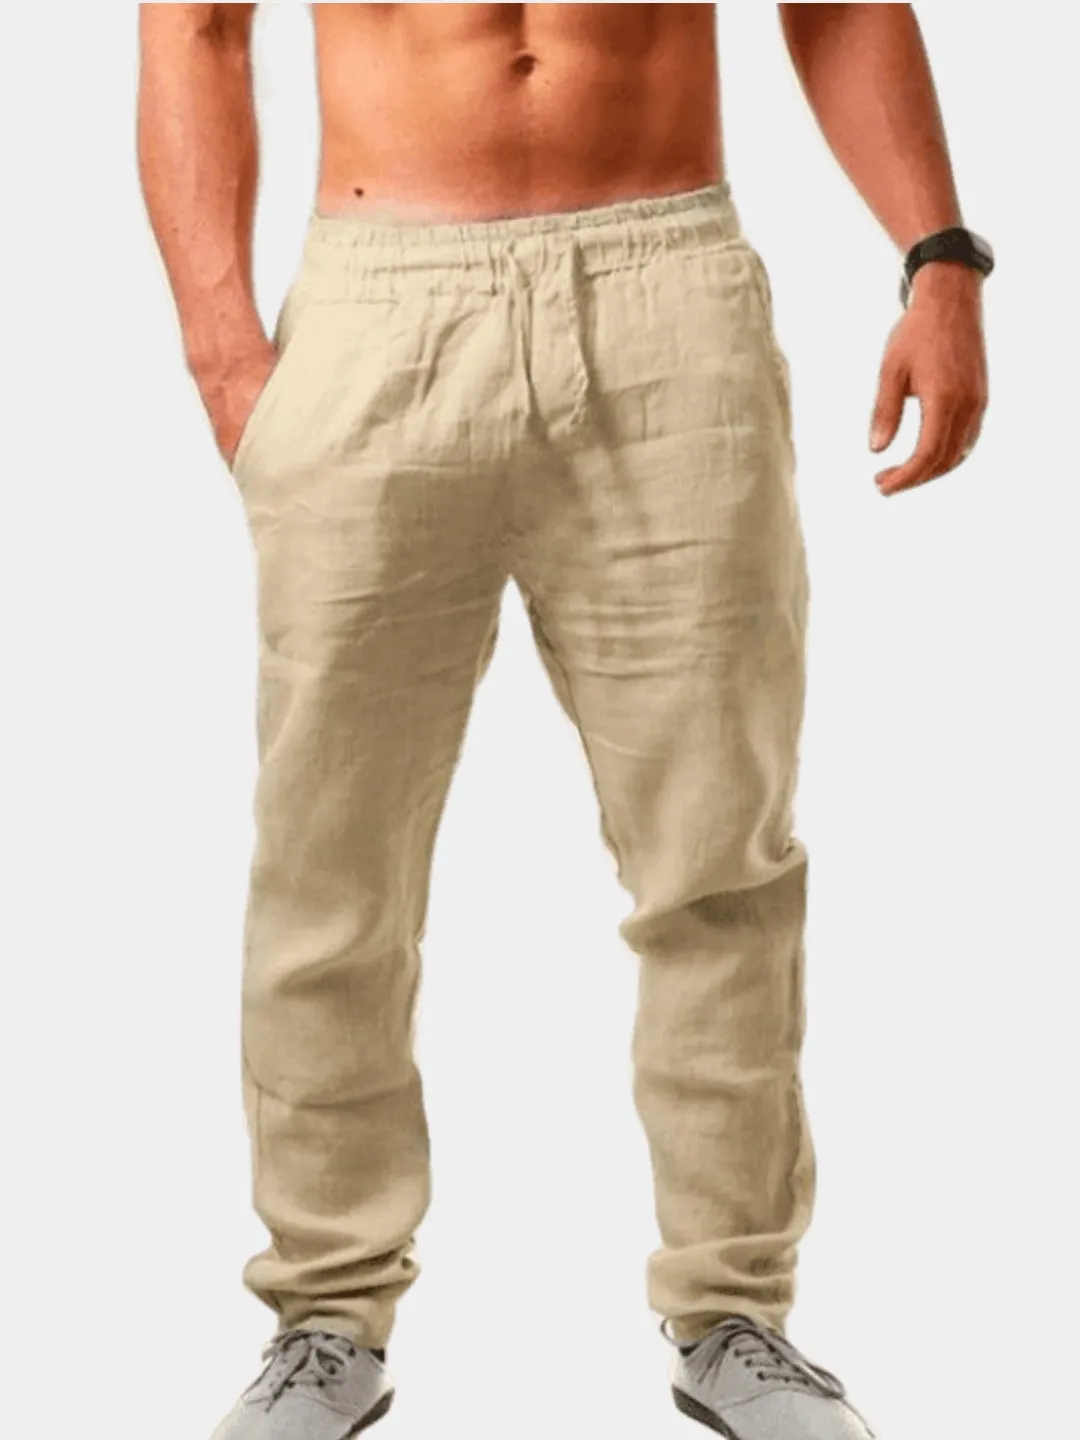 Мужские летние брюки из хлопка, легкие и дышащие купить по цене 890 ₽ винтернет-магазине KazanExpress